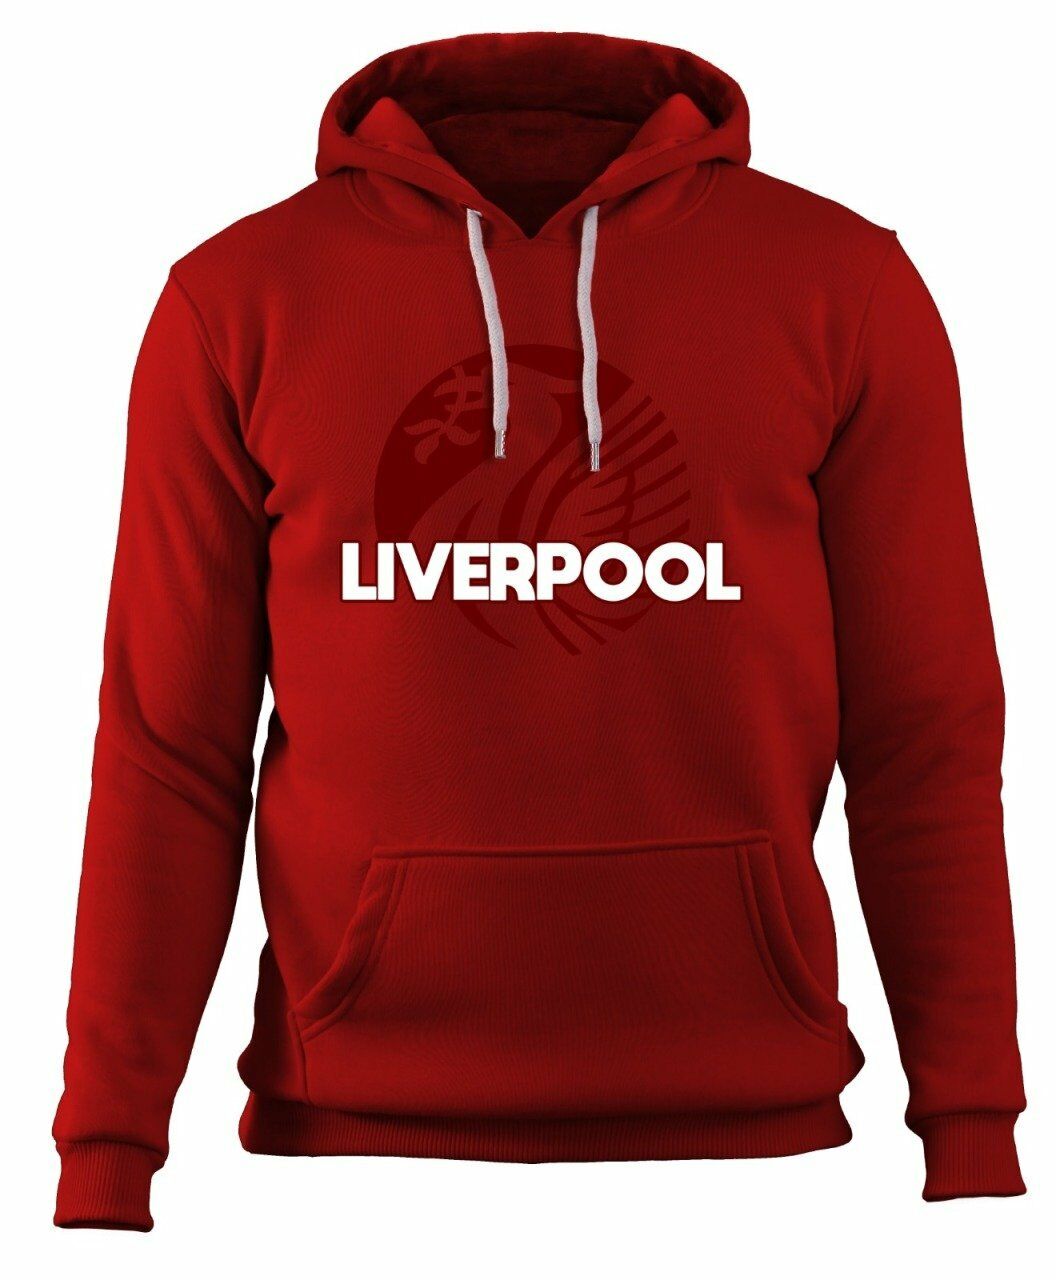 YNWA - Liverpool Sweatshirt